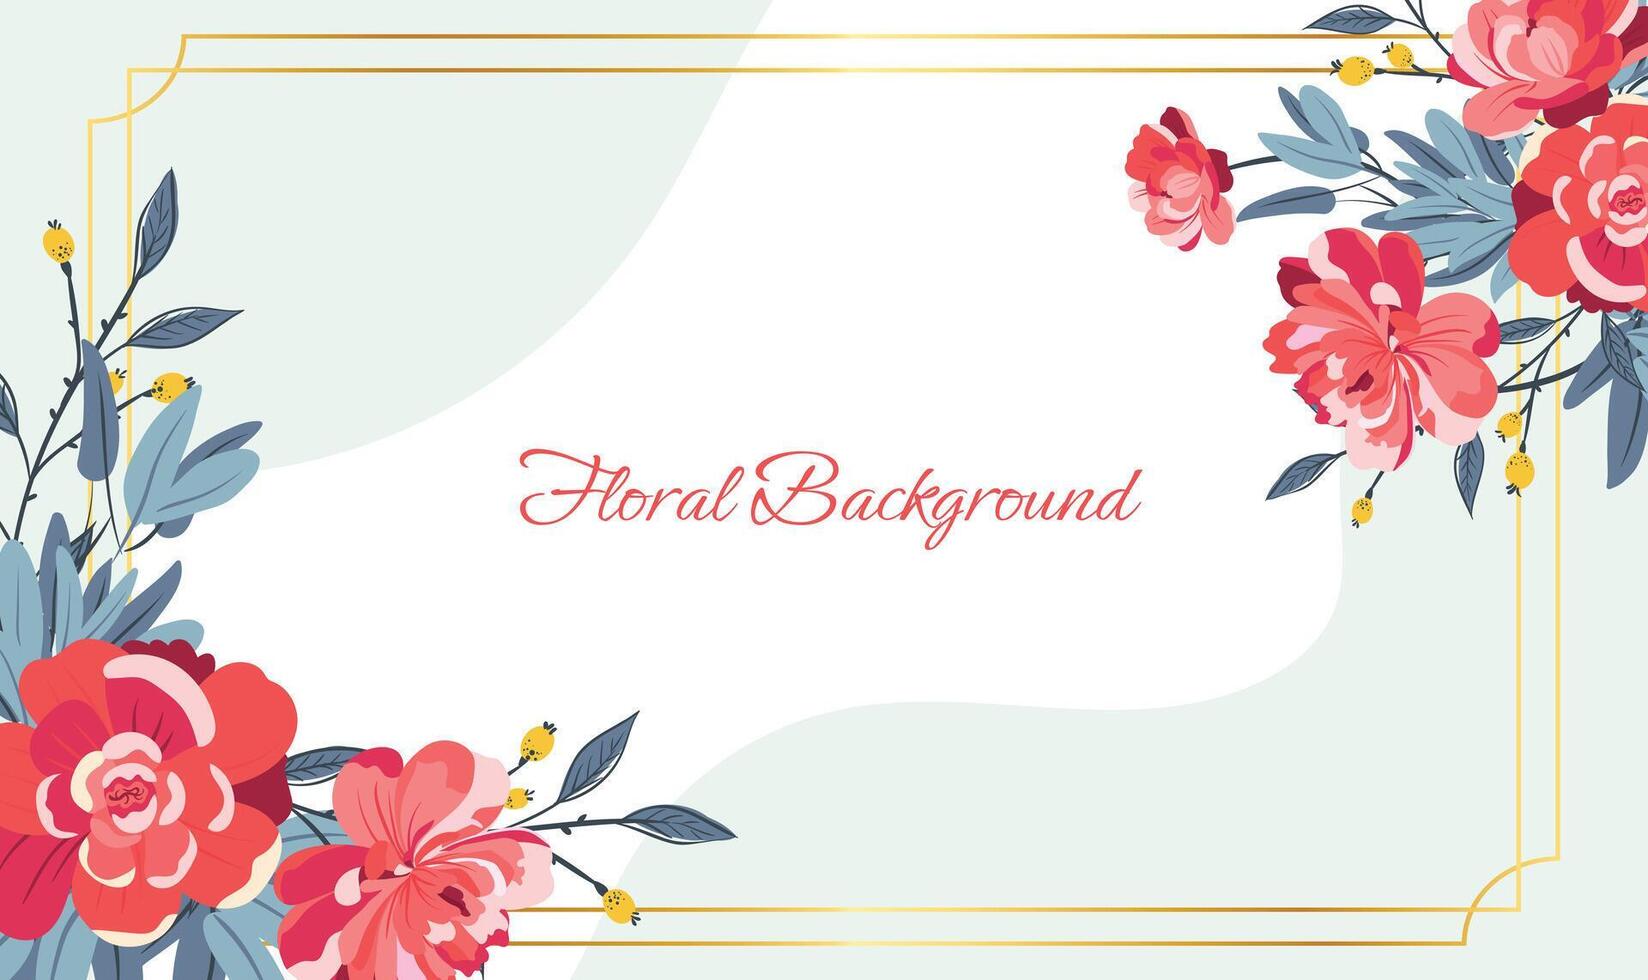 Aquarell Blumen- Hintergrund zum Hochzeit Startseite vektor